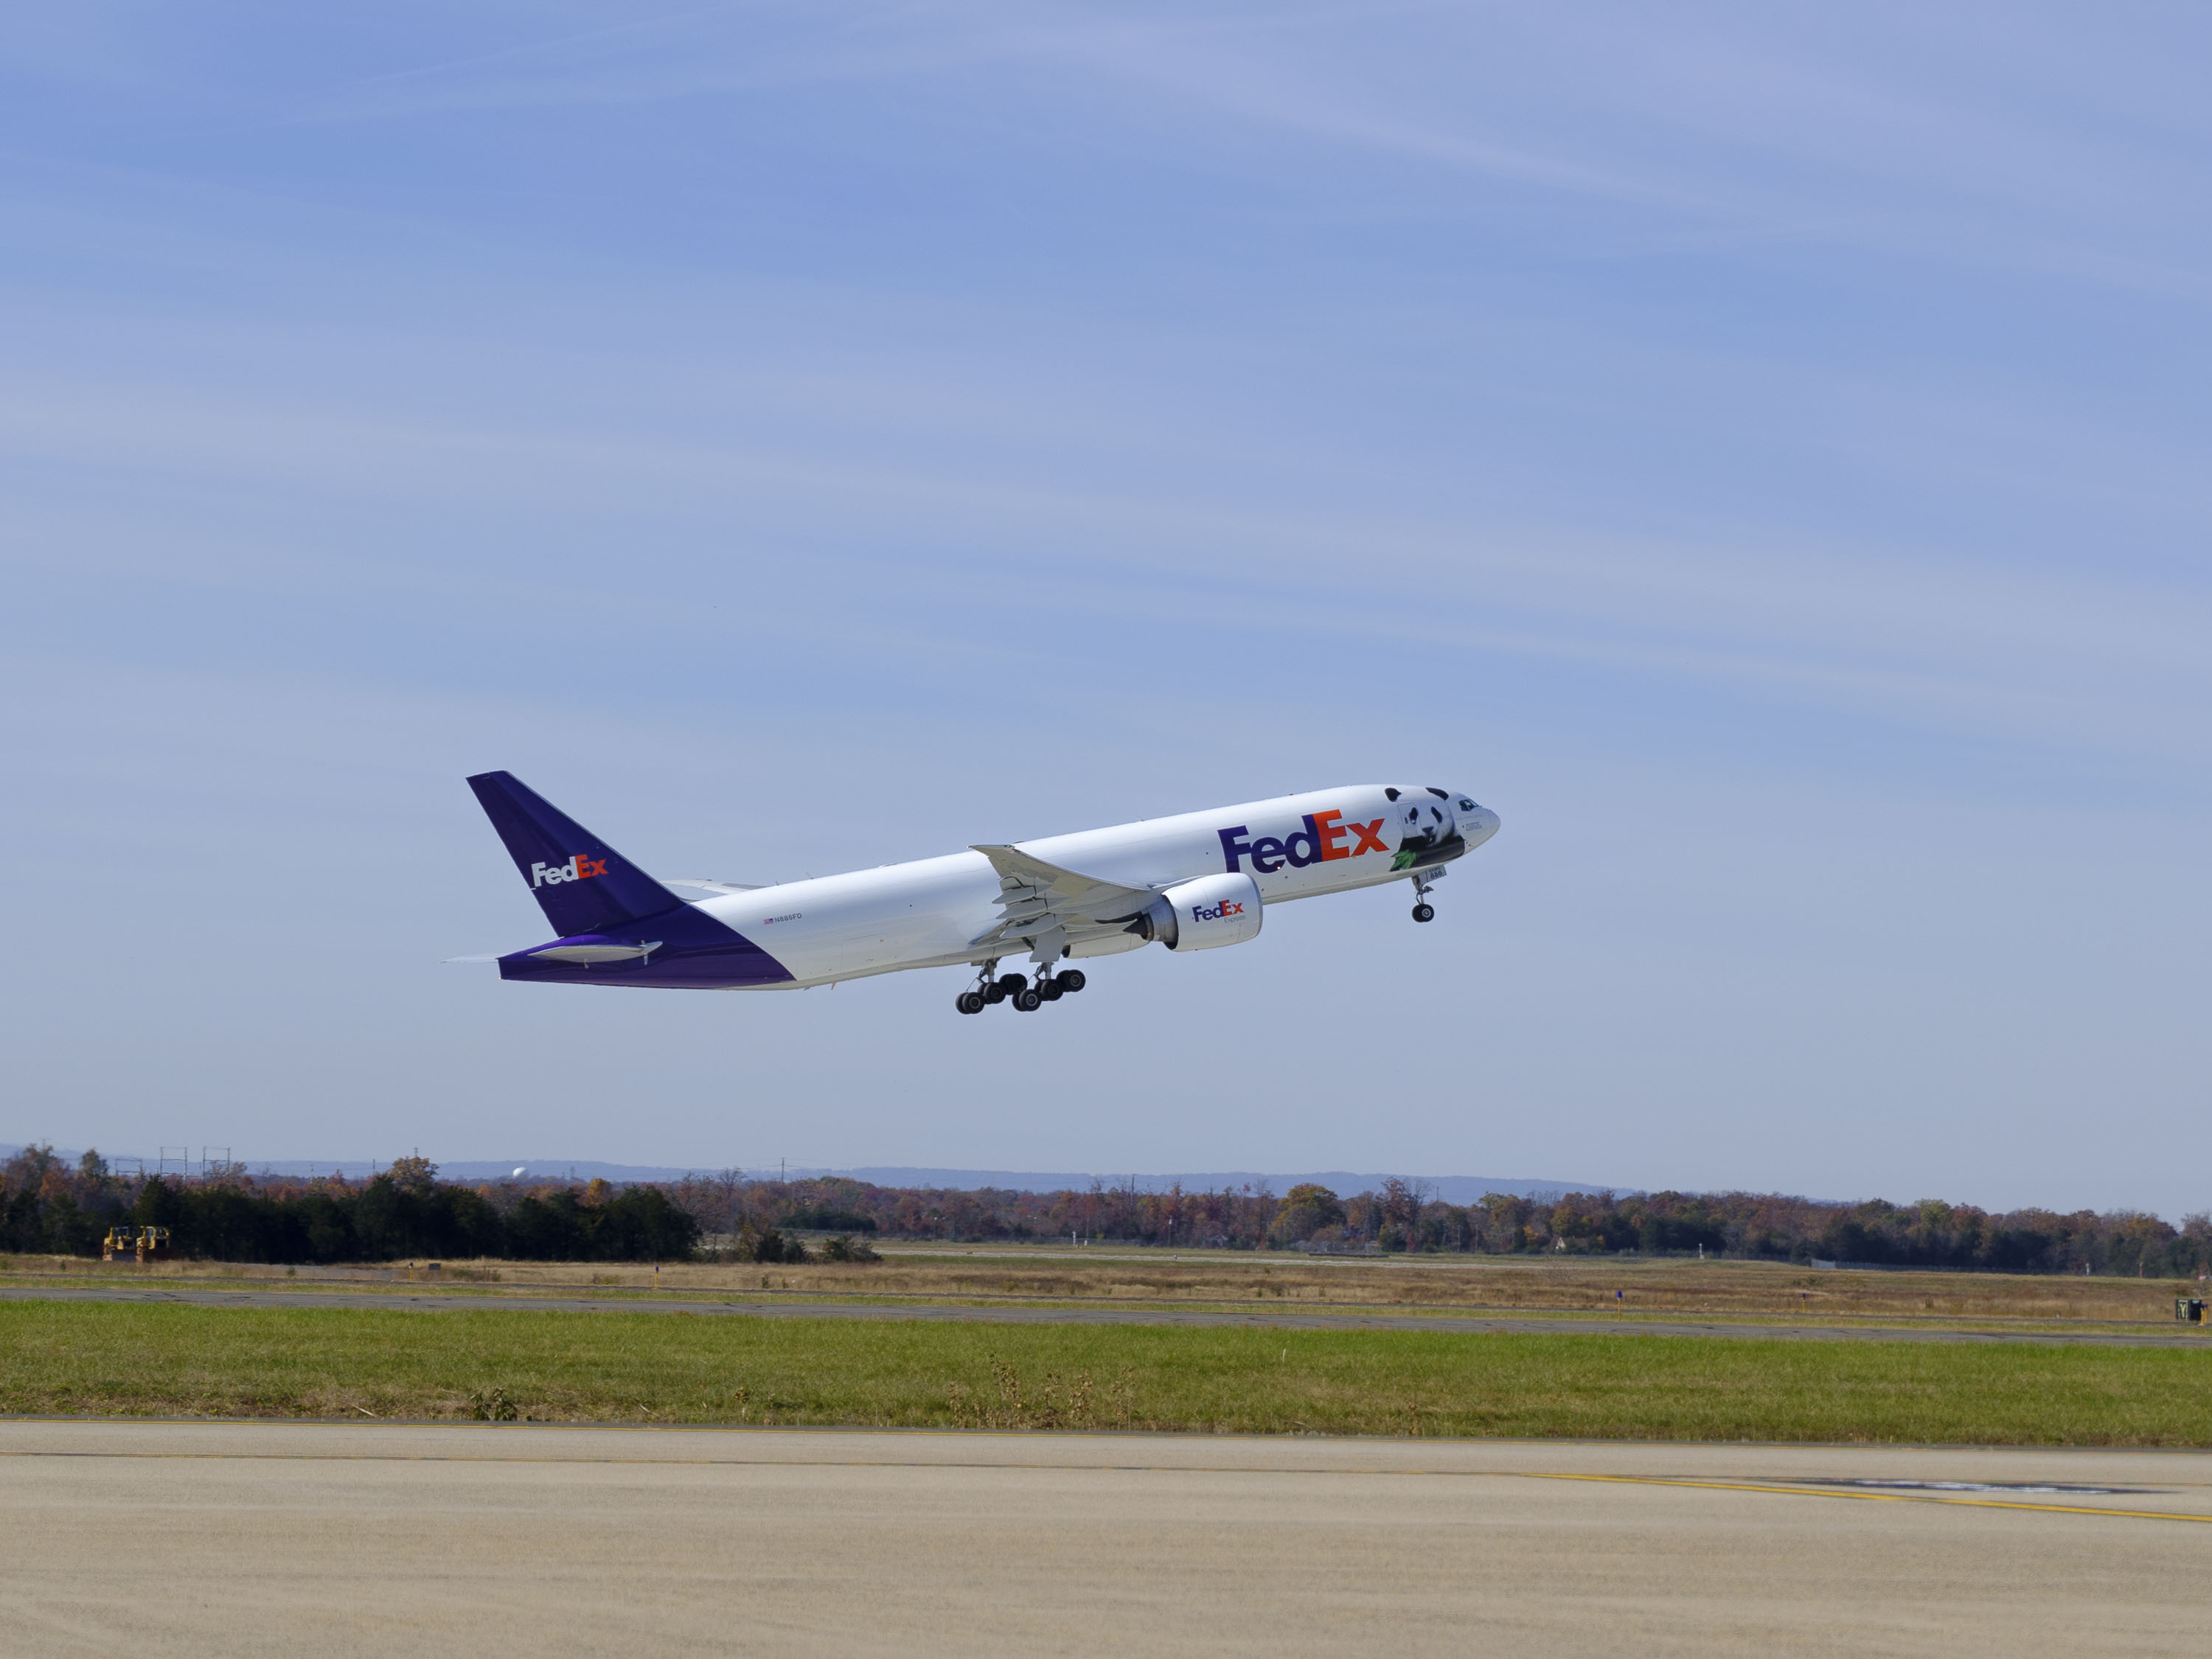 FedEx Panda Express 777 plane taking off at airport